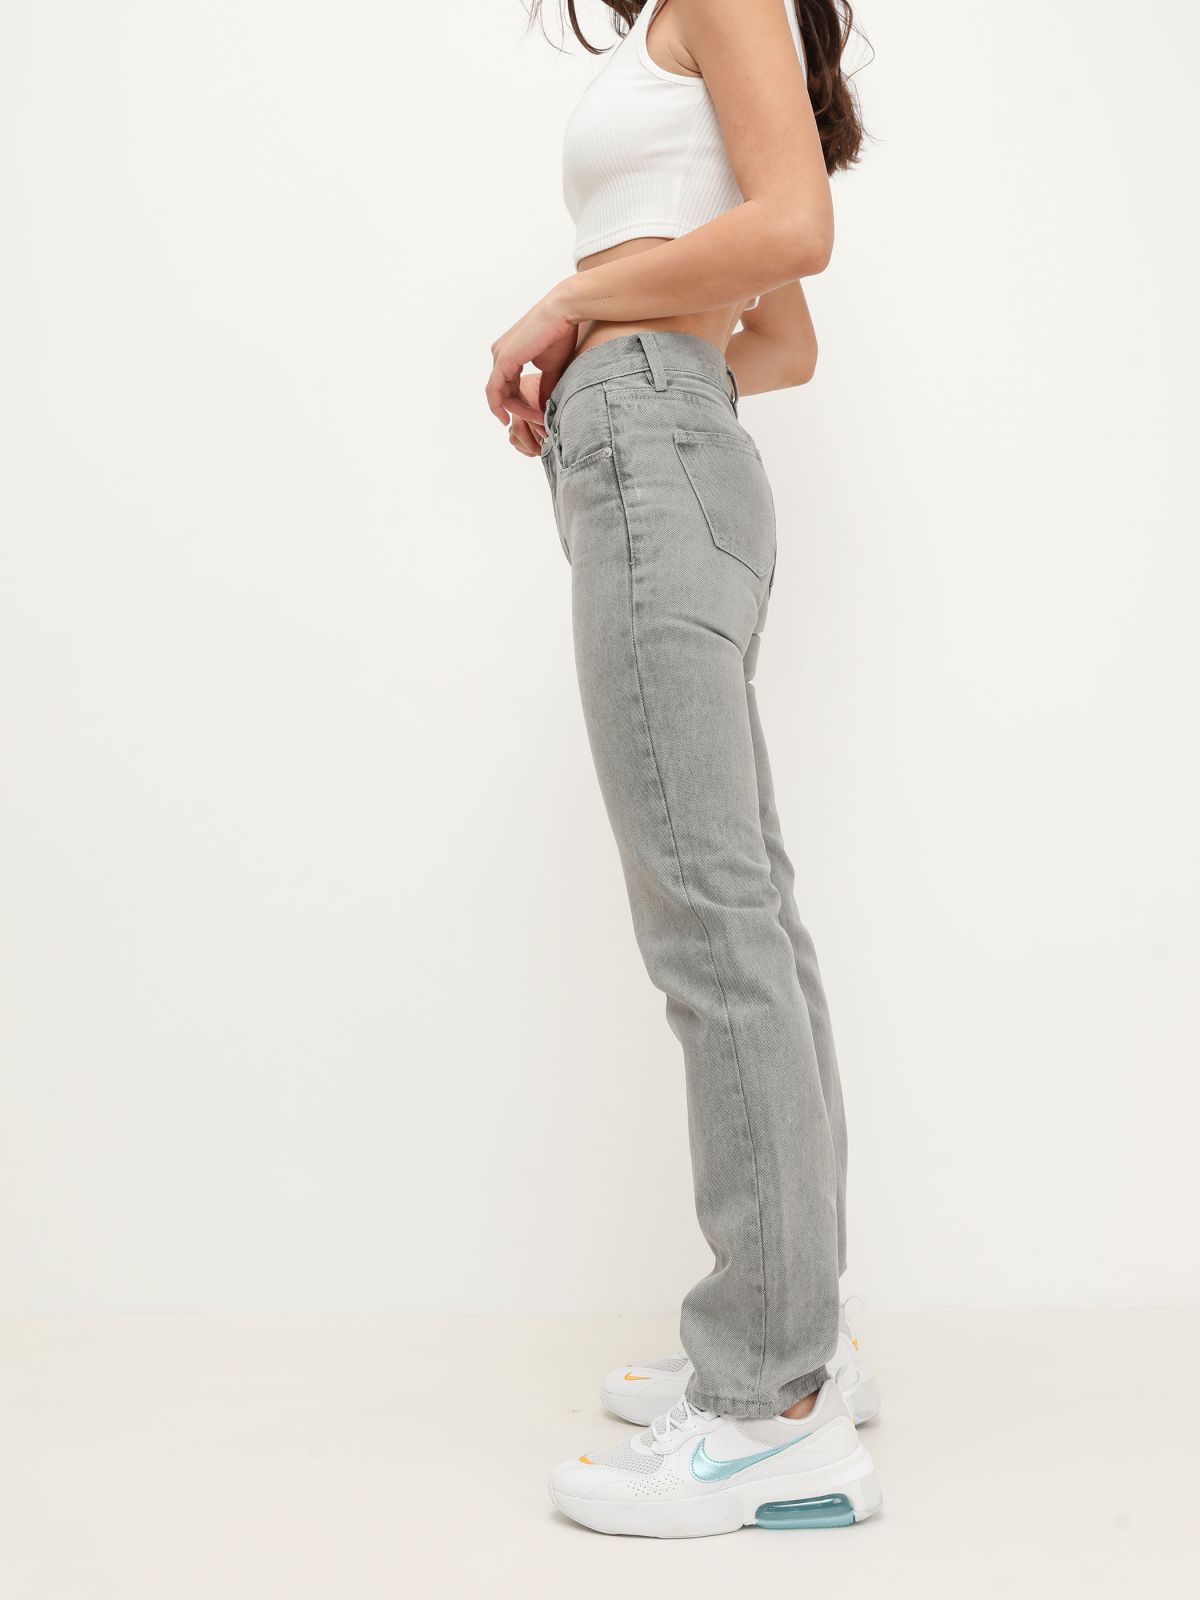  ג'ינס אפור בשטיפה בהירה גזרה ישרה של TERMINAL X